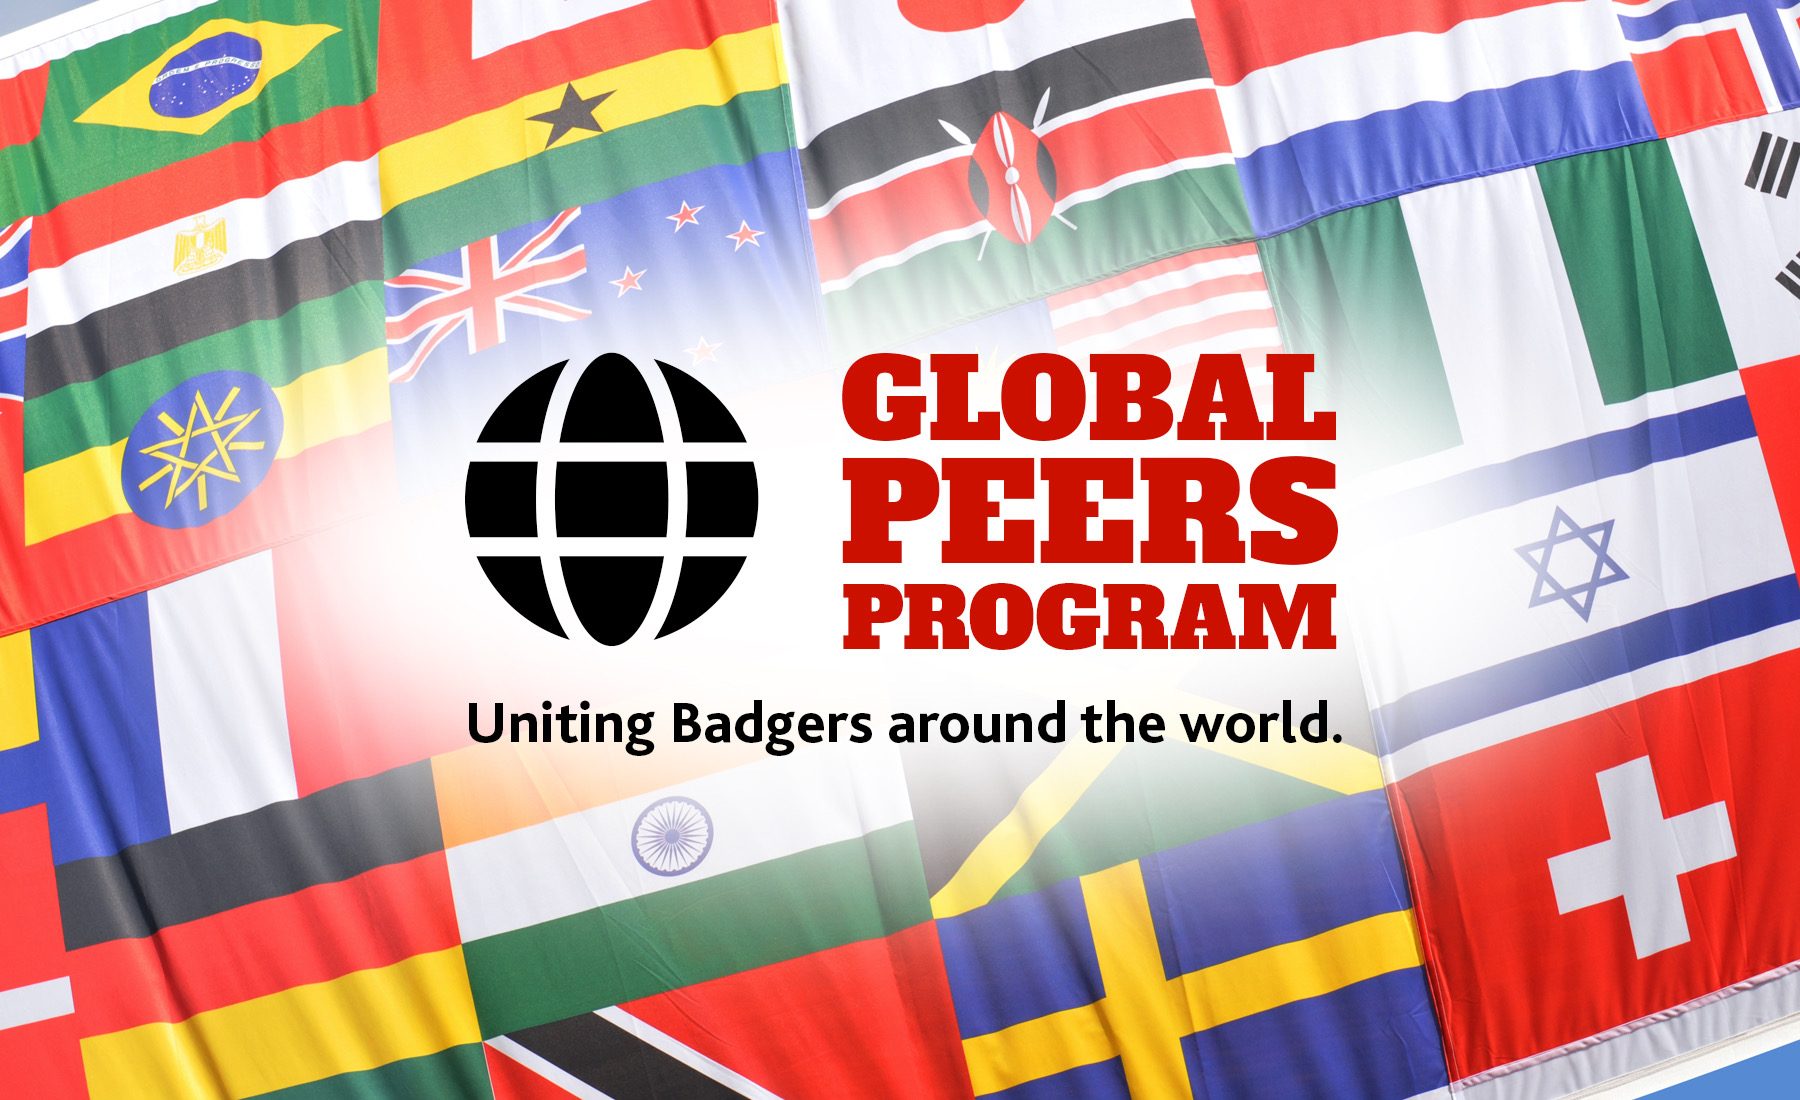 Global Peers Program